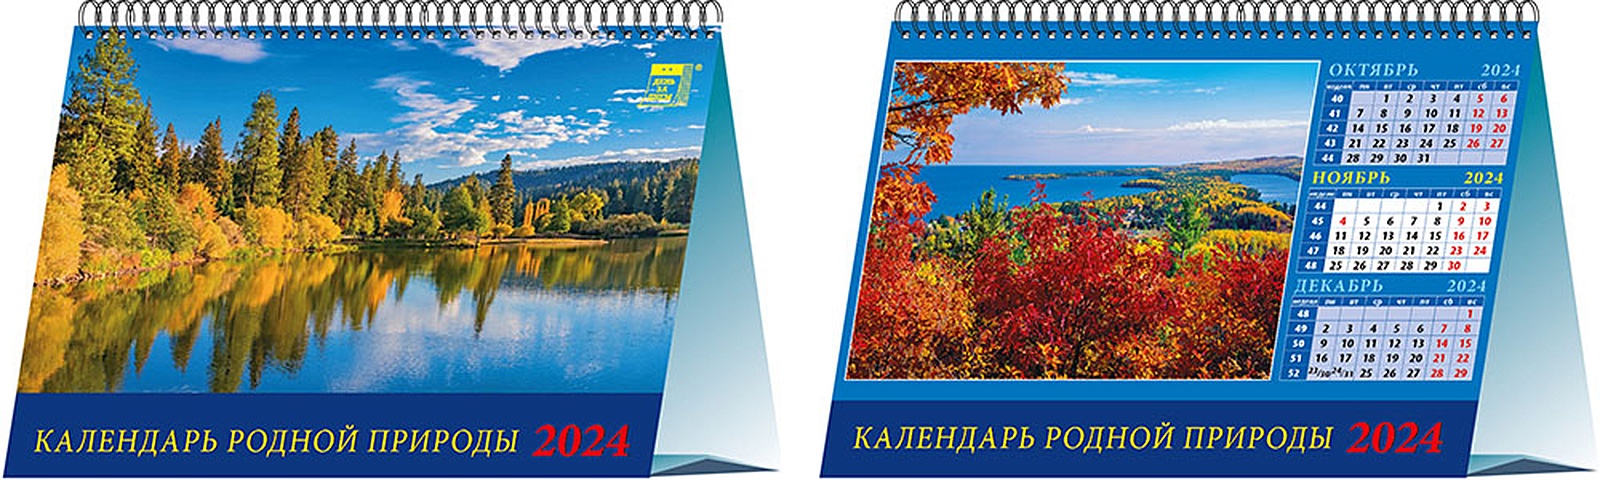 Календарь 2024г 200*140 Календарь родной природы настольный, домик сочиняй мечты календарь домик 2024 год с ежиками